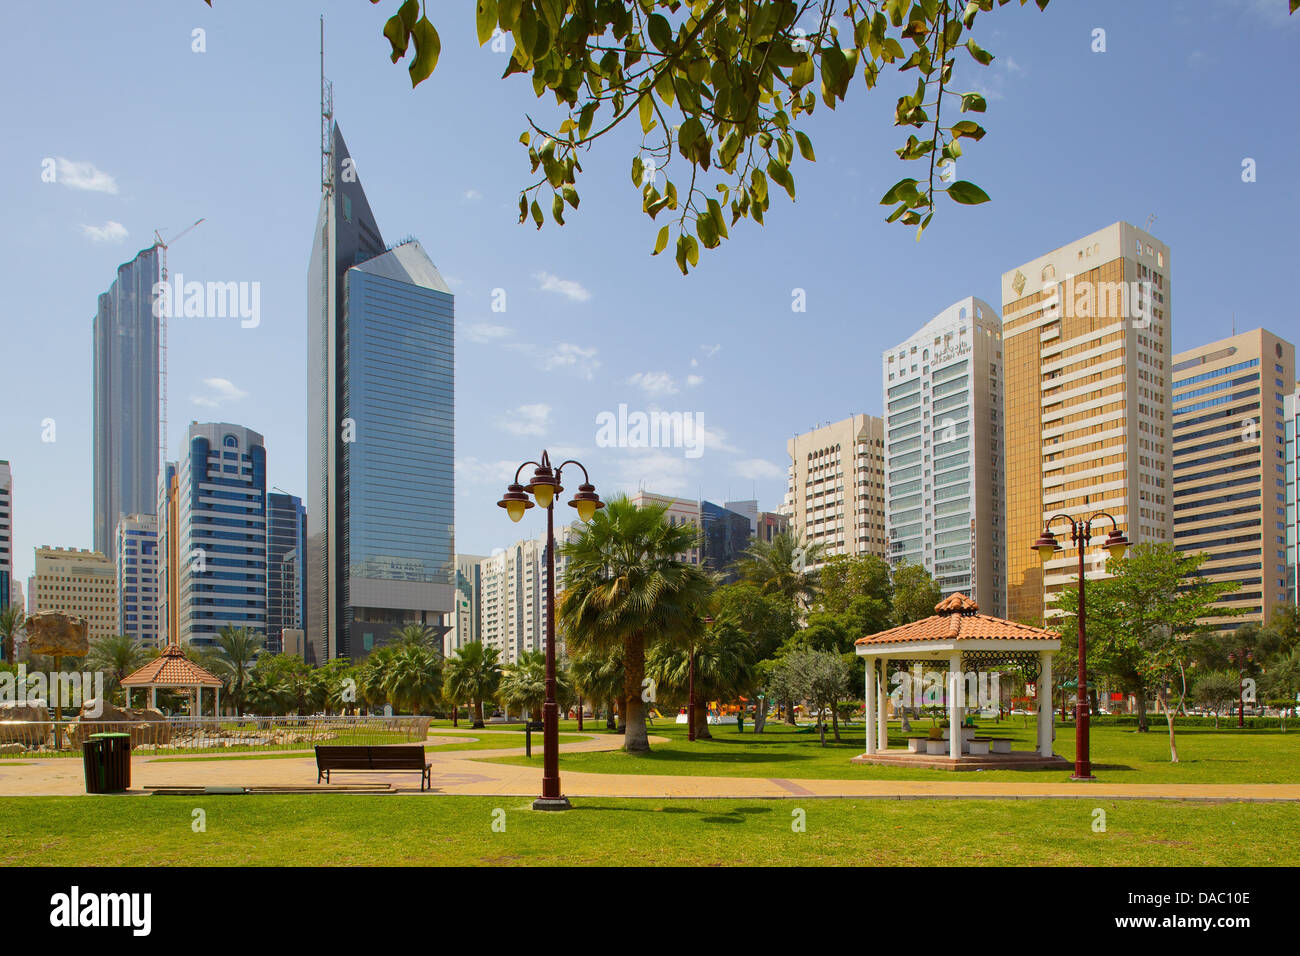 Capital Park, Abu Dhabi, United Arab Emirates, Middle East Stock Photo